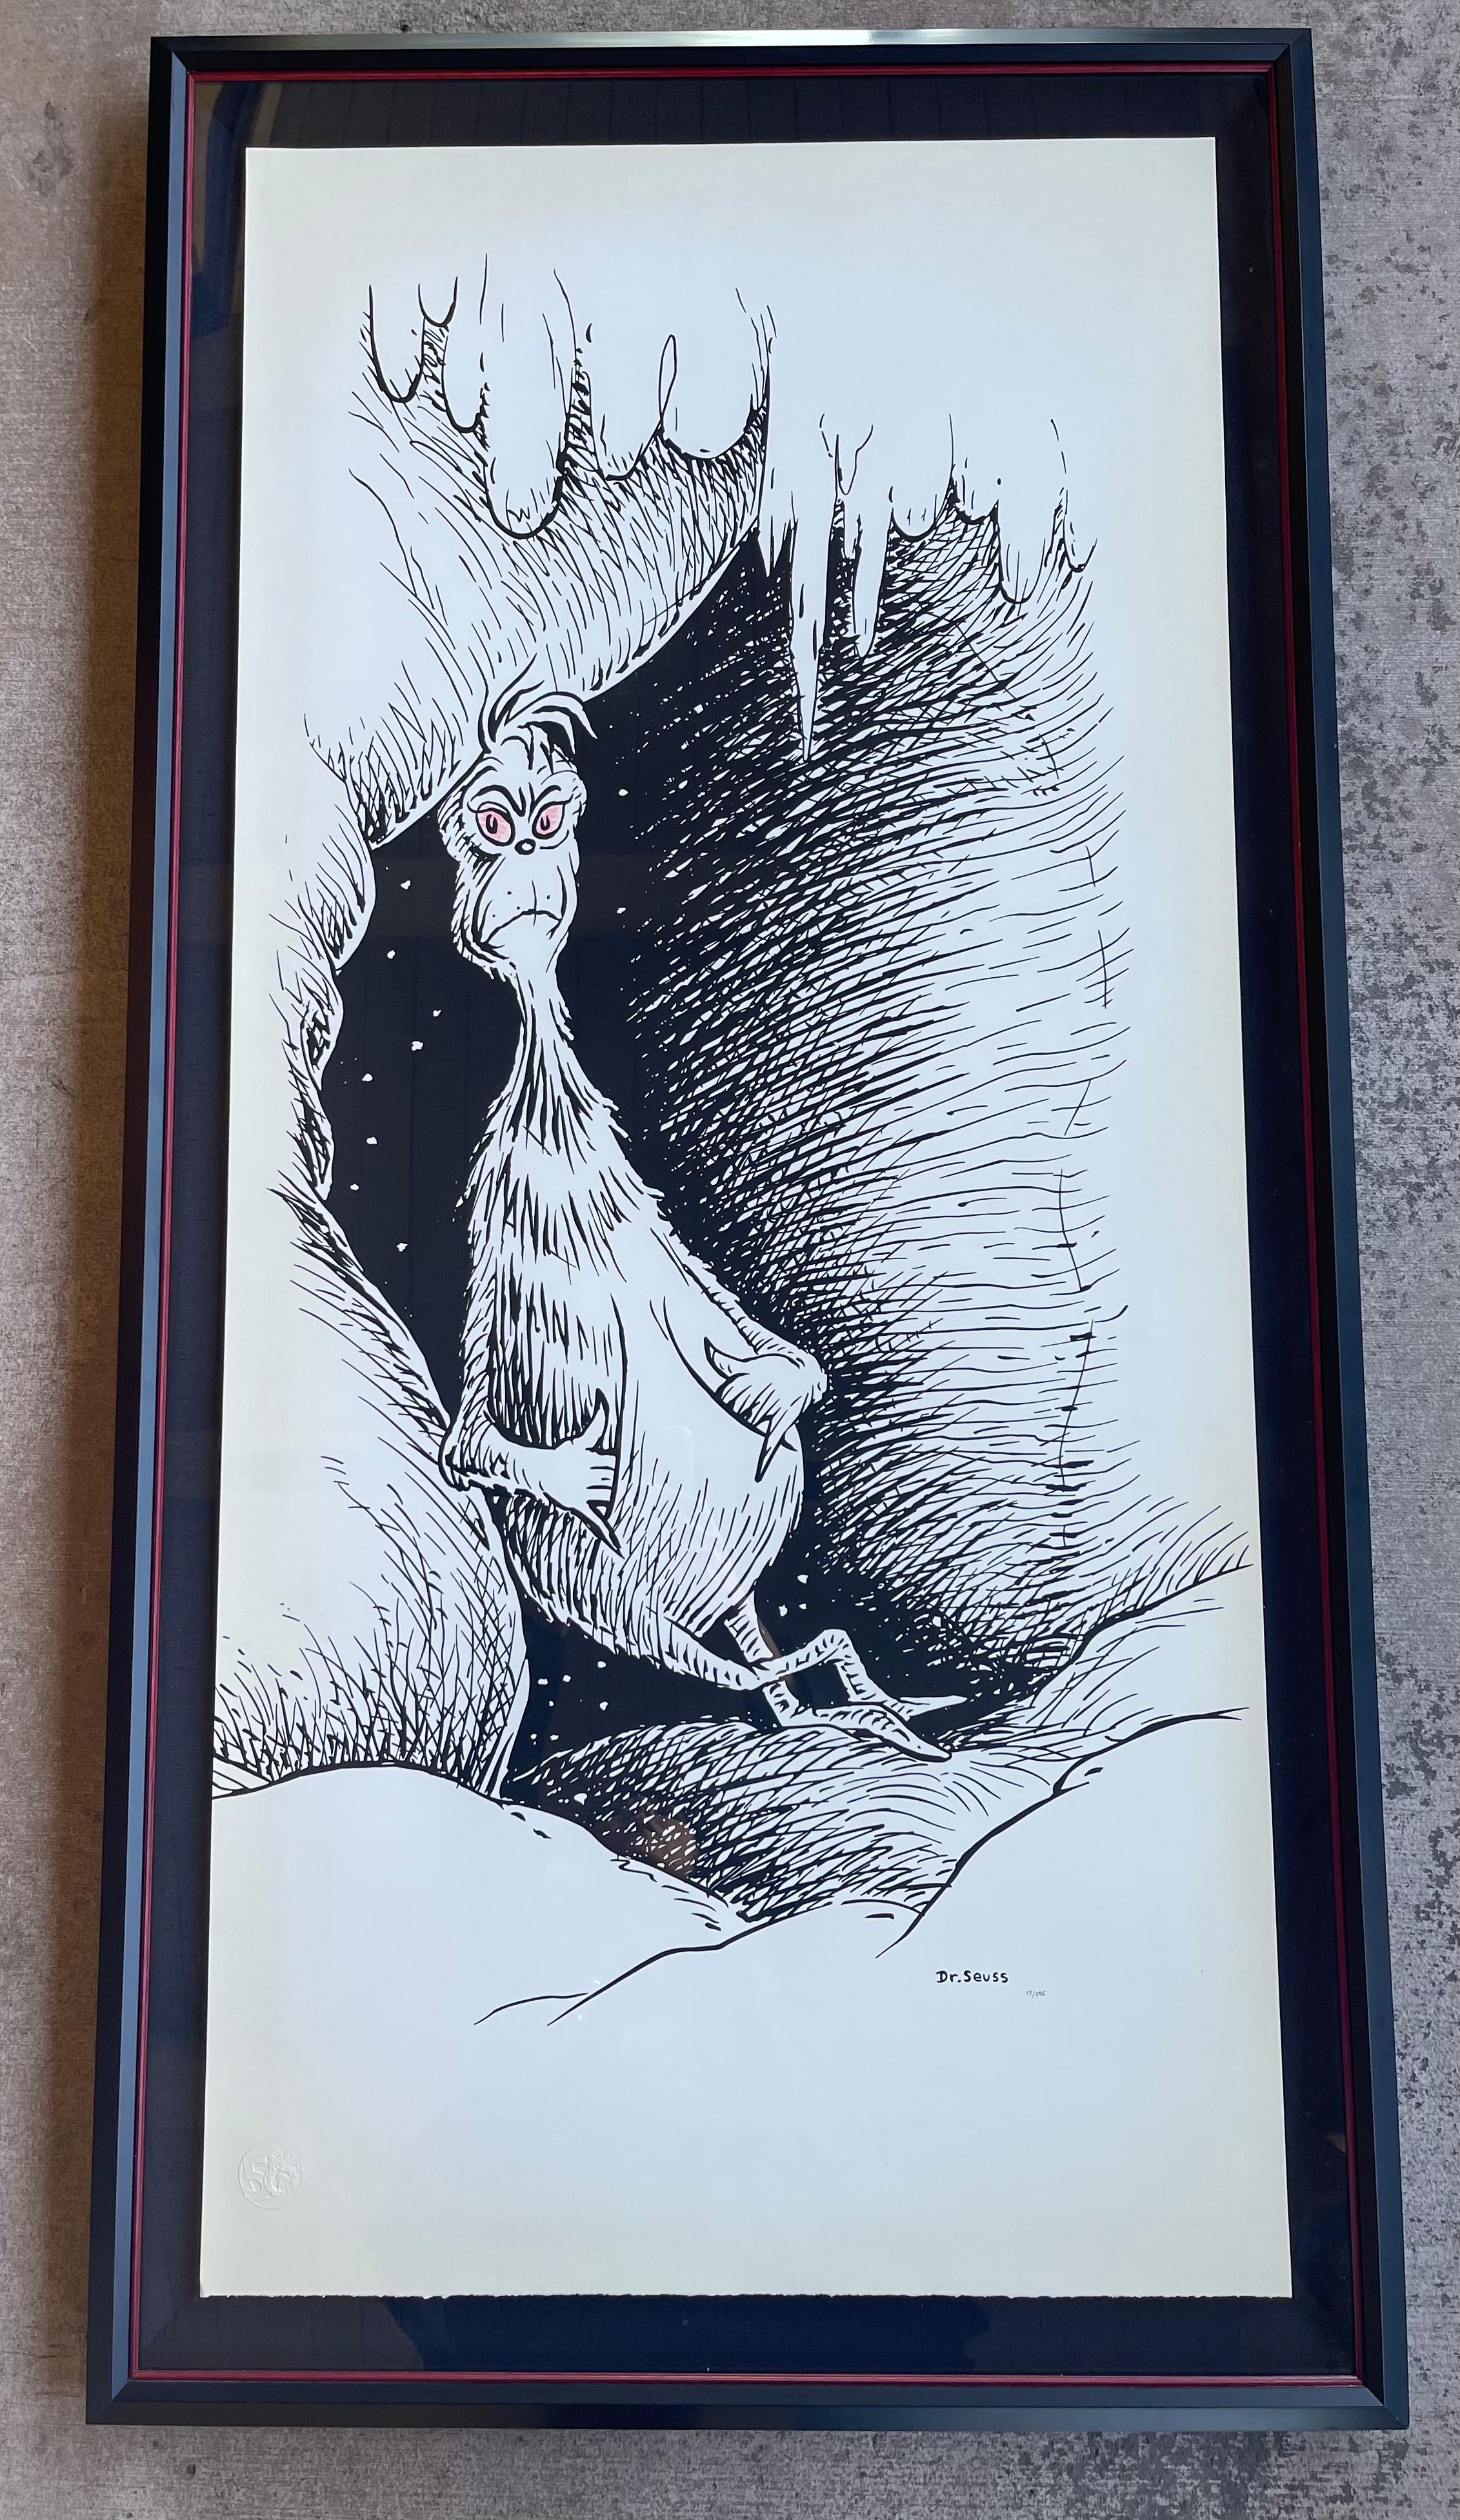 Sehr sammelwürdig und selten, ausverkauft limitierte Auflage 50th Anniversary of How the Grinch Stole Christmas, Dr. Seuss 